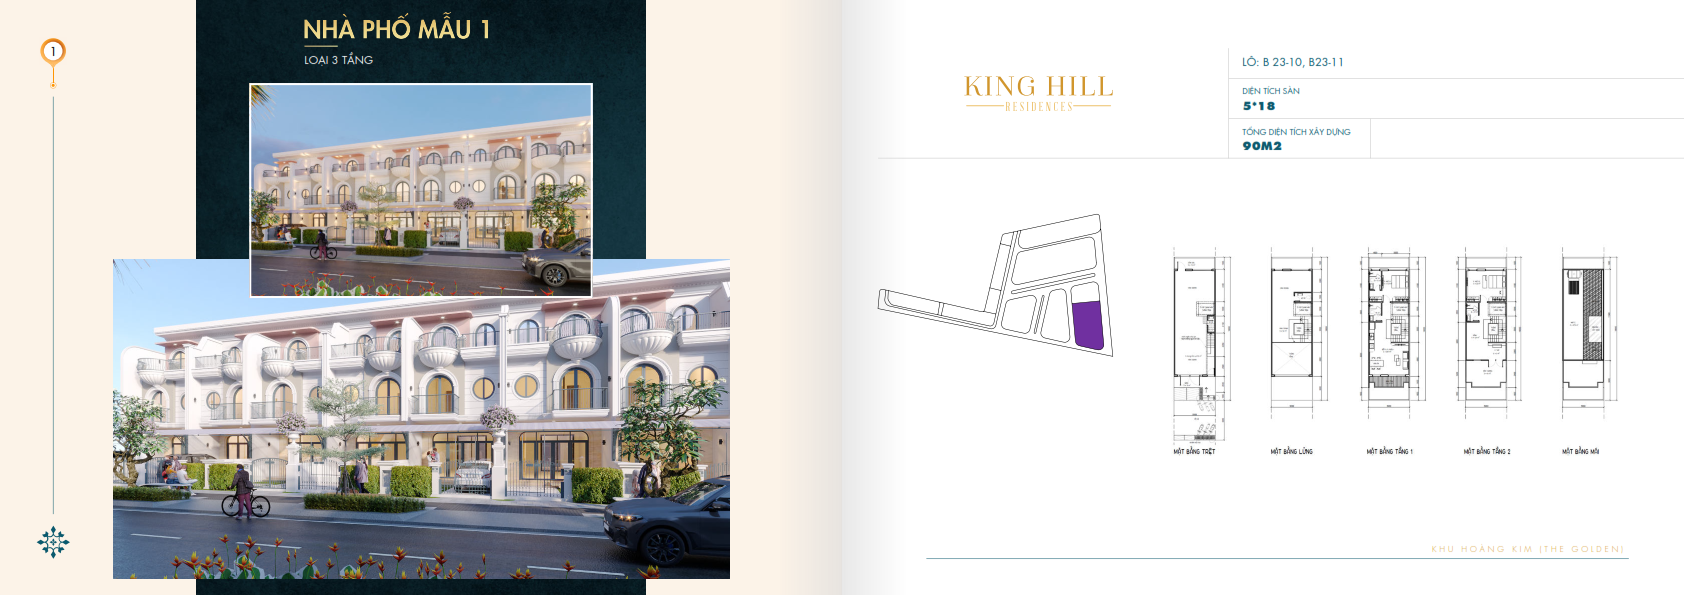 Nha pho mau 1 Du an Khu dân cư King Hill - King Hill Residences